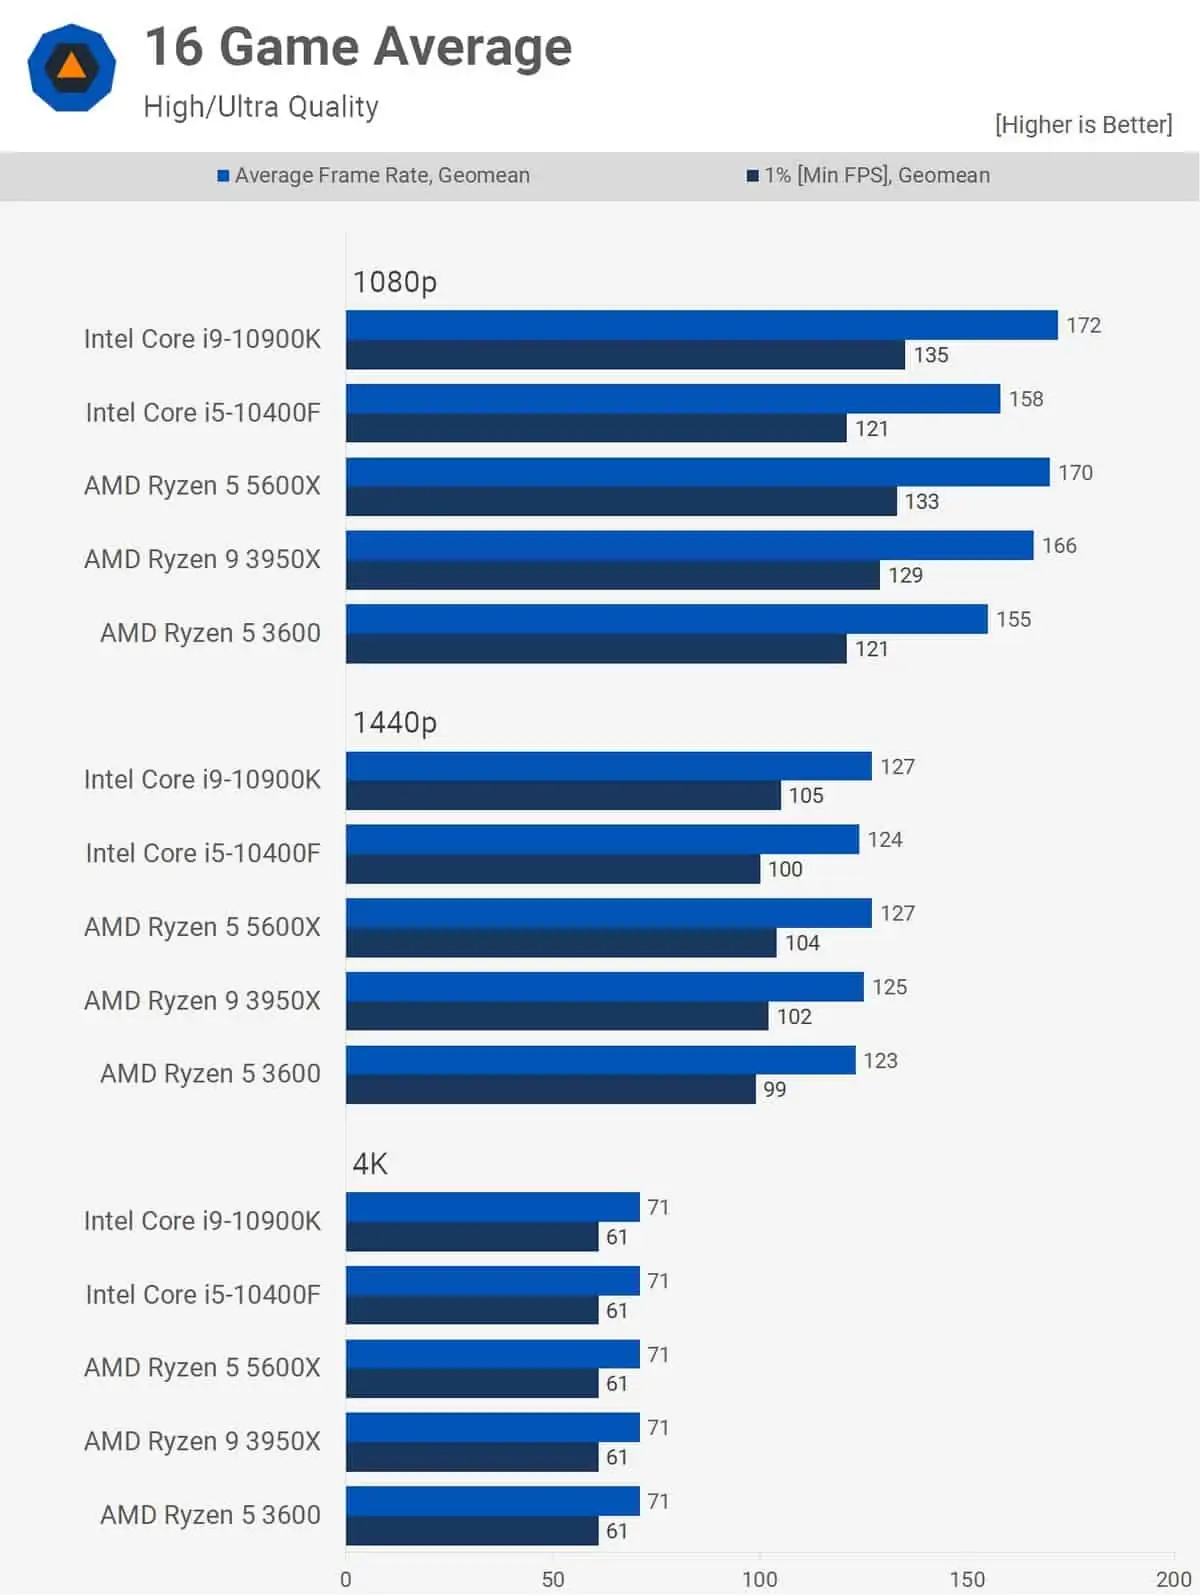 AMD ou Intel: qual o melhor processador?